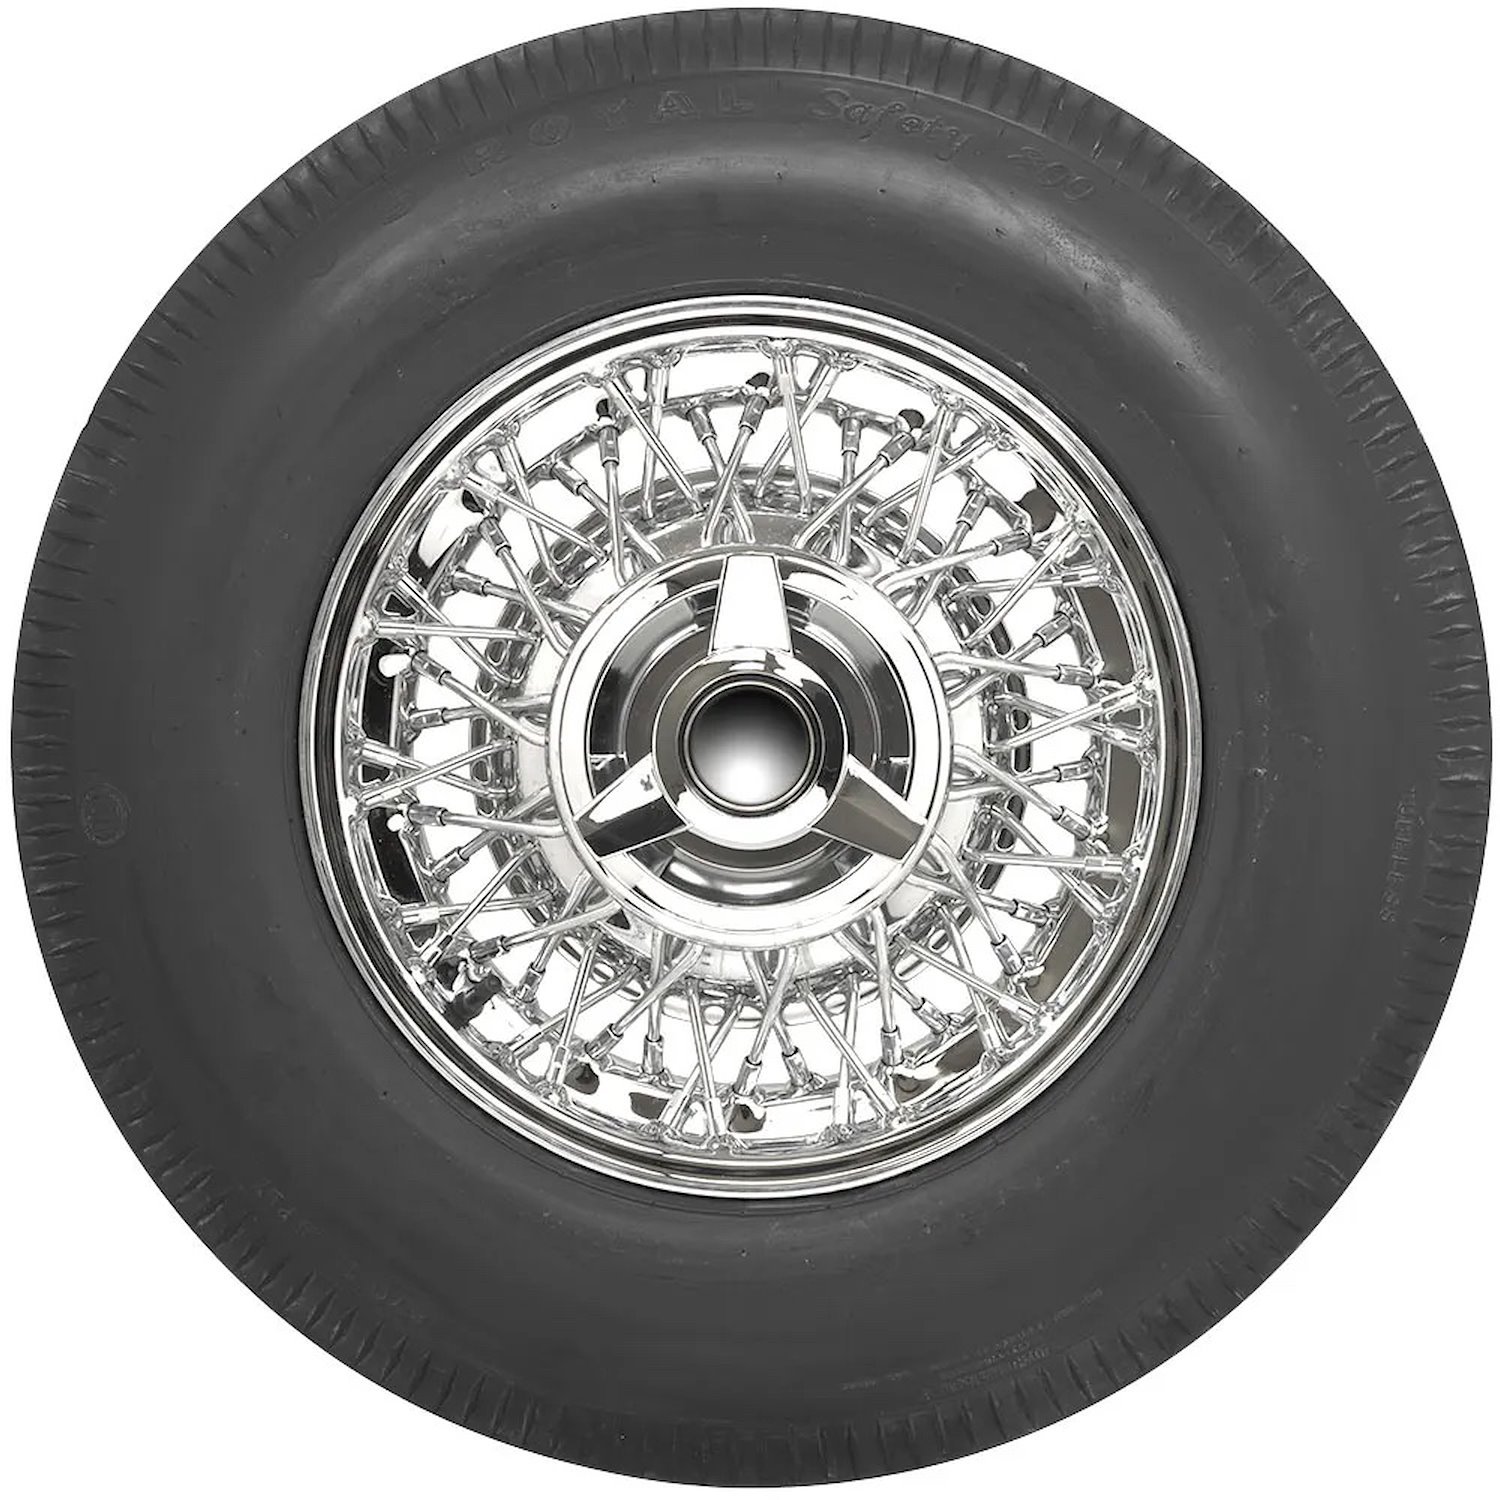 57610 Tire, US Royal, 670-15